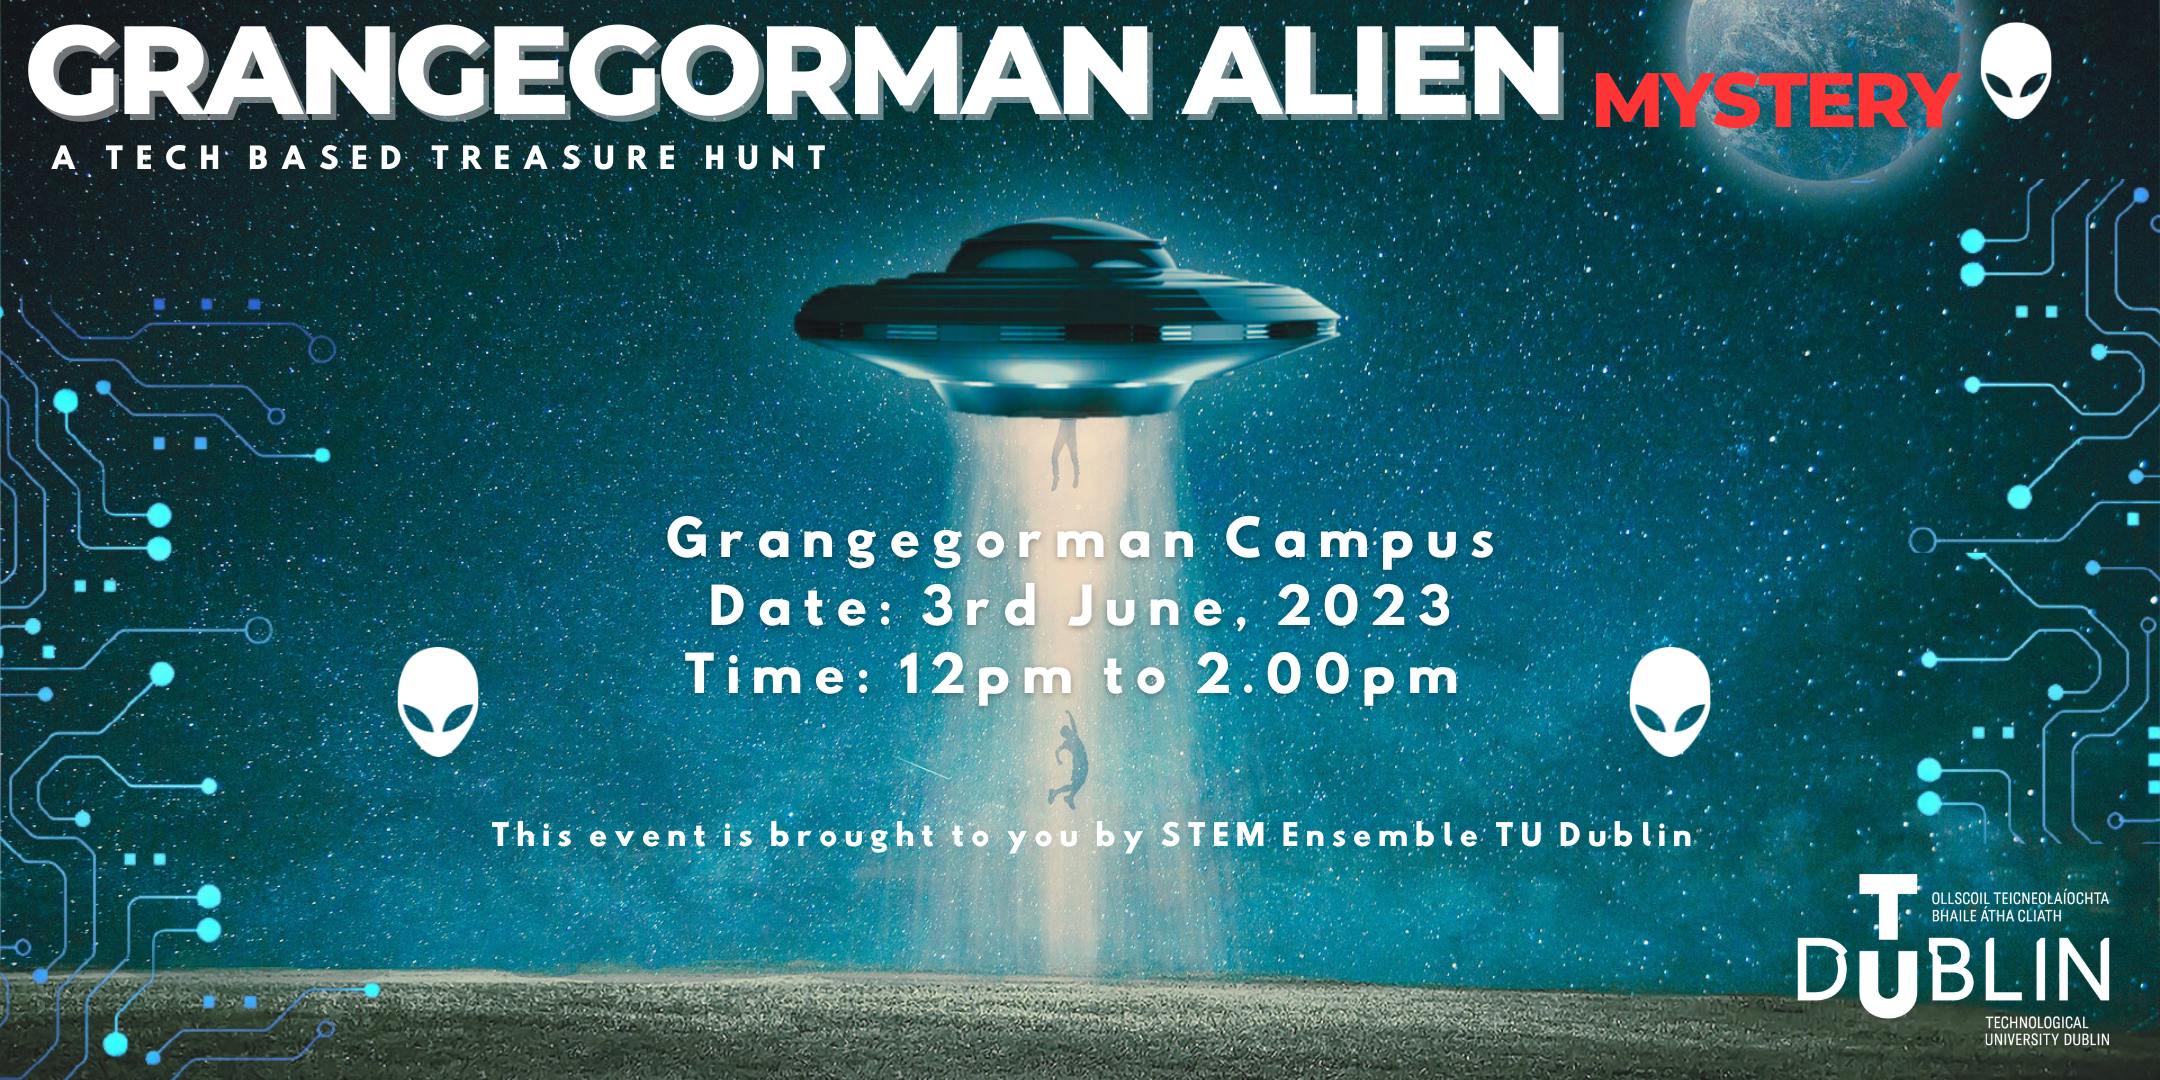 Grangegorman Alien Mystery